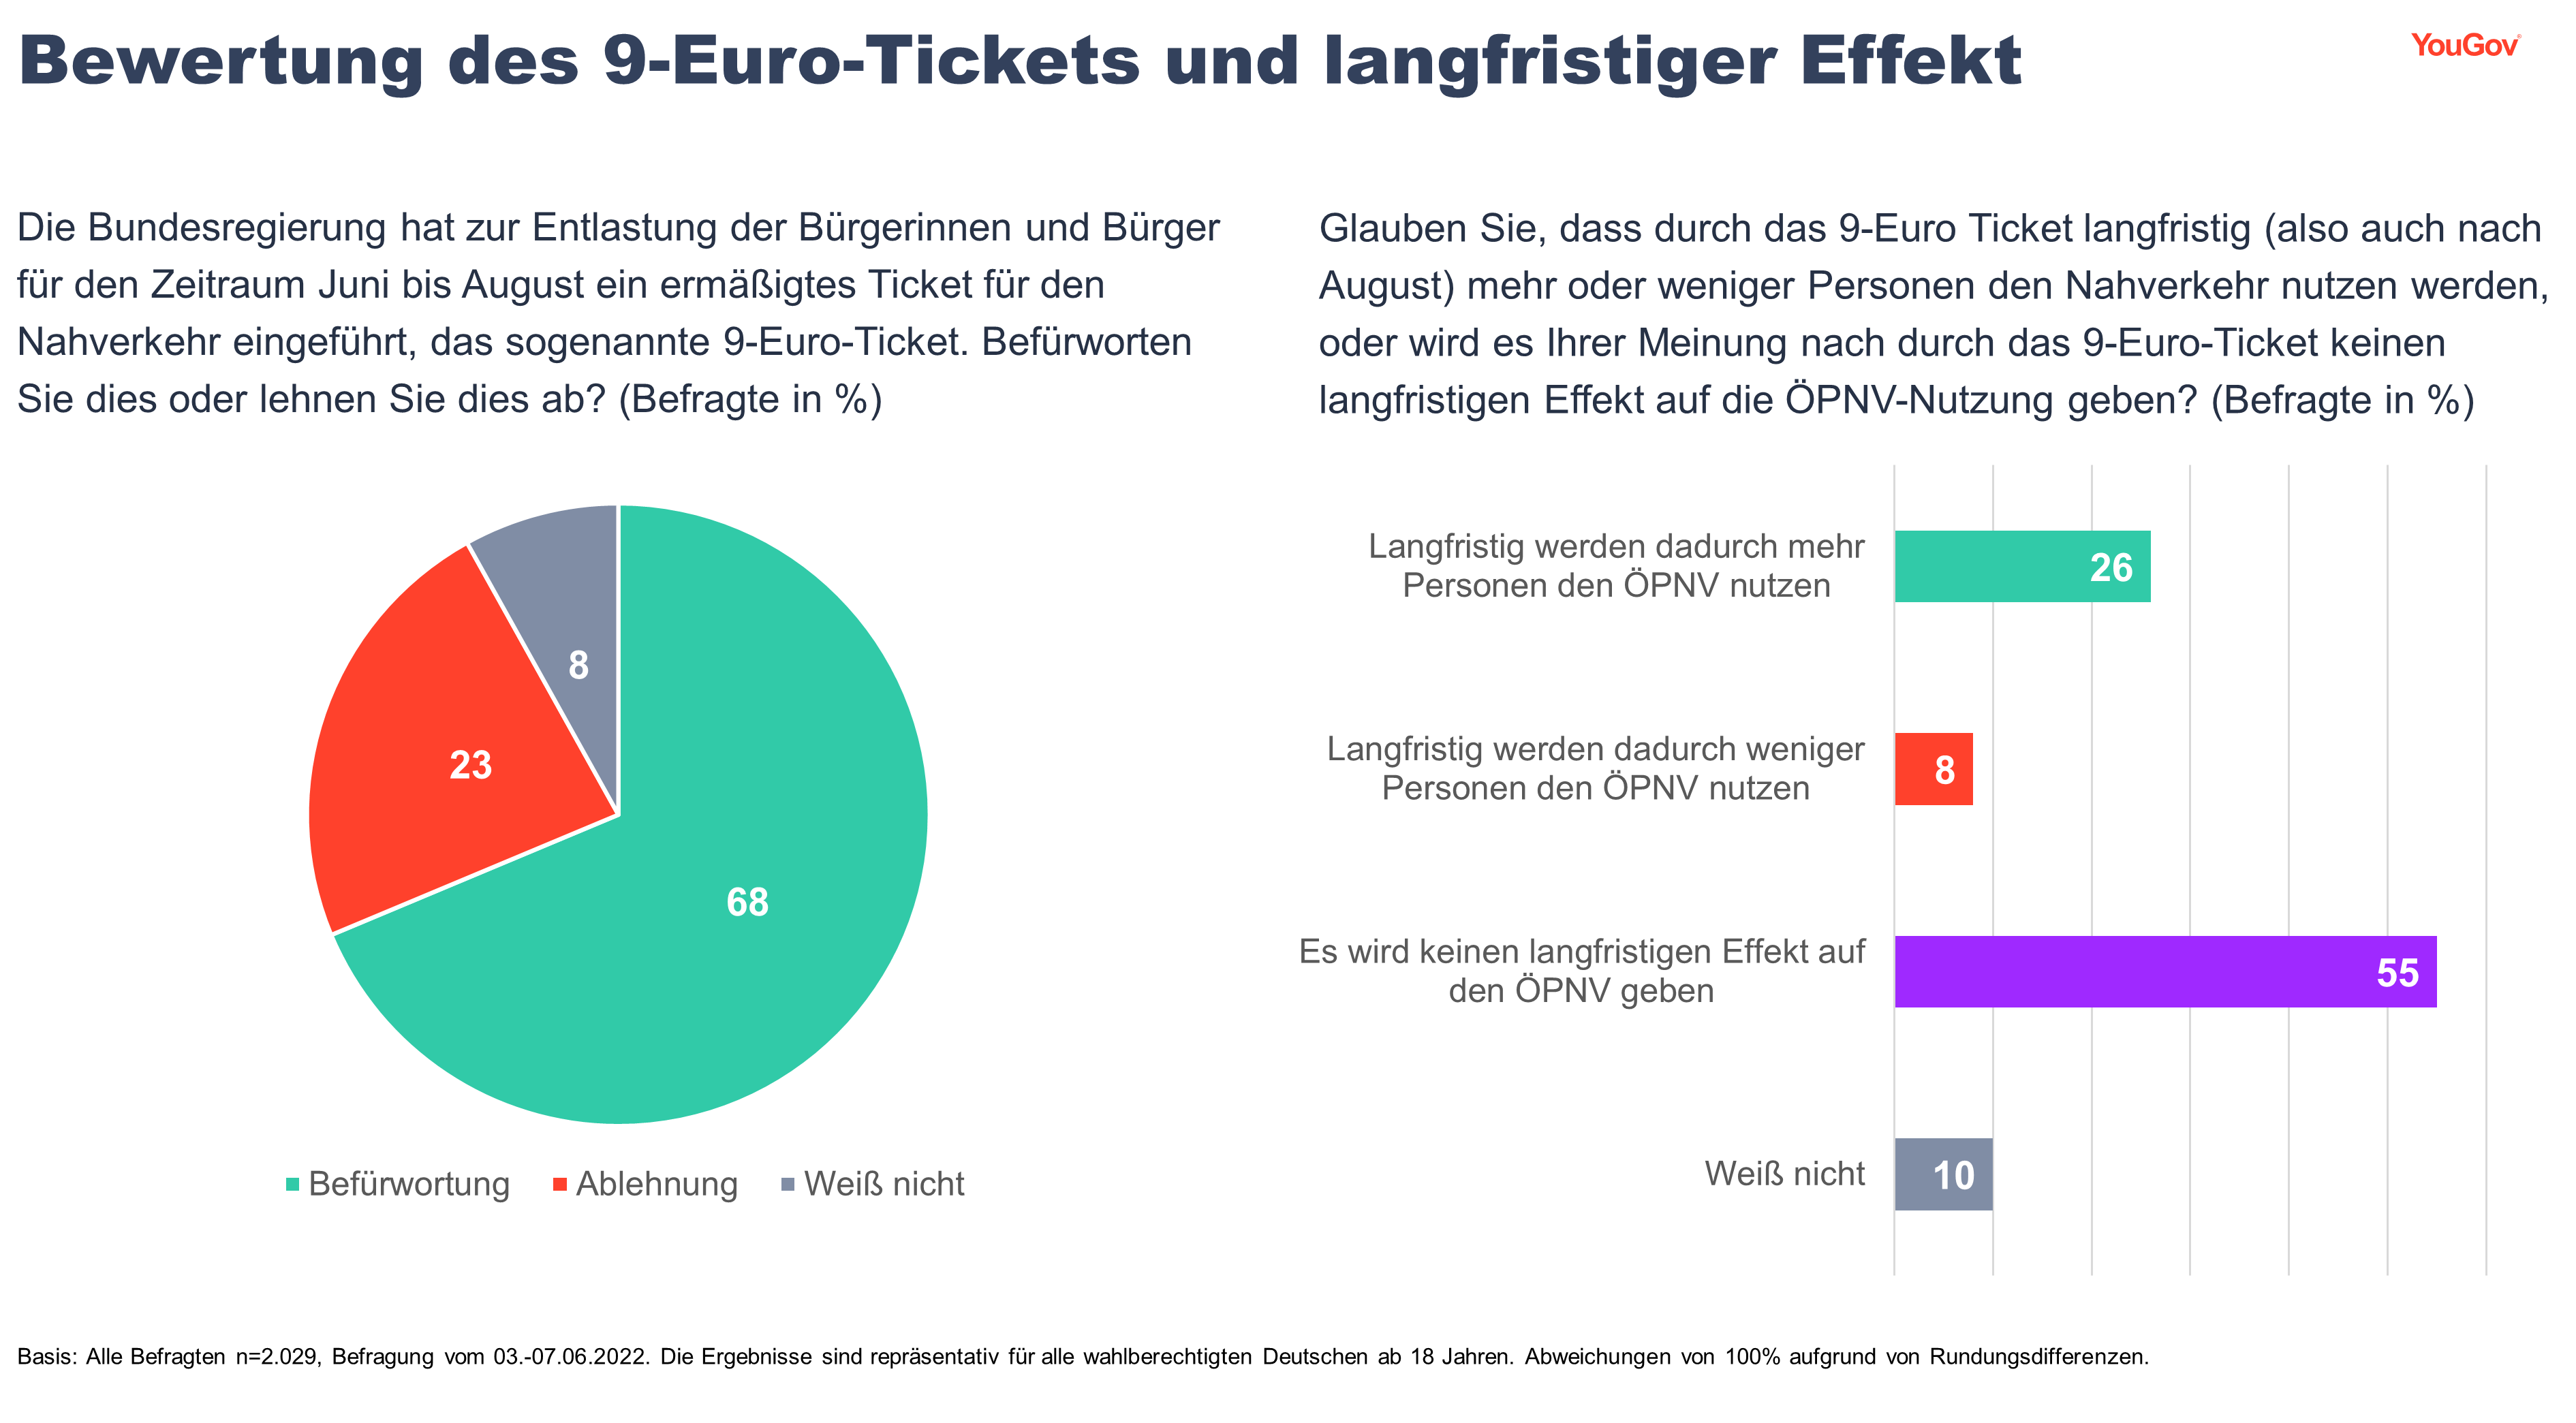 Befürwortung des 9-Euro-Tickets, aber kein langfristiger Effekt erwartet